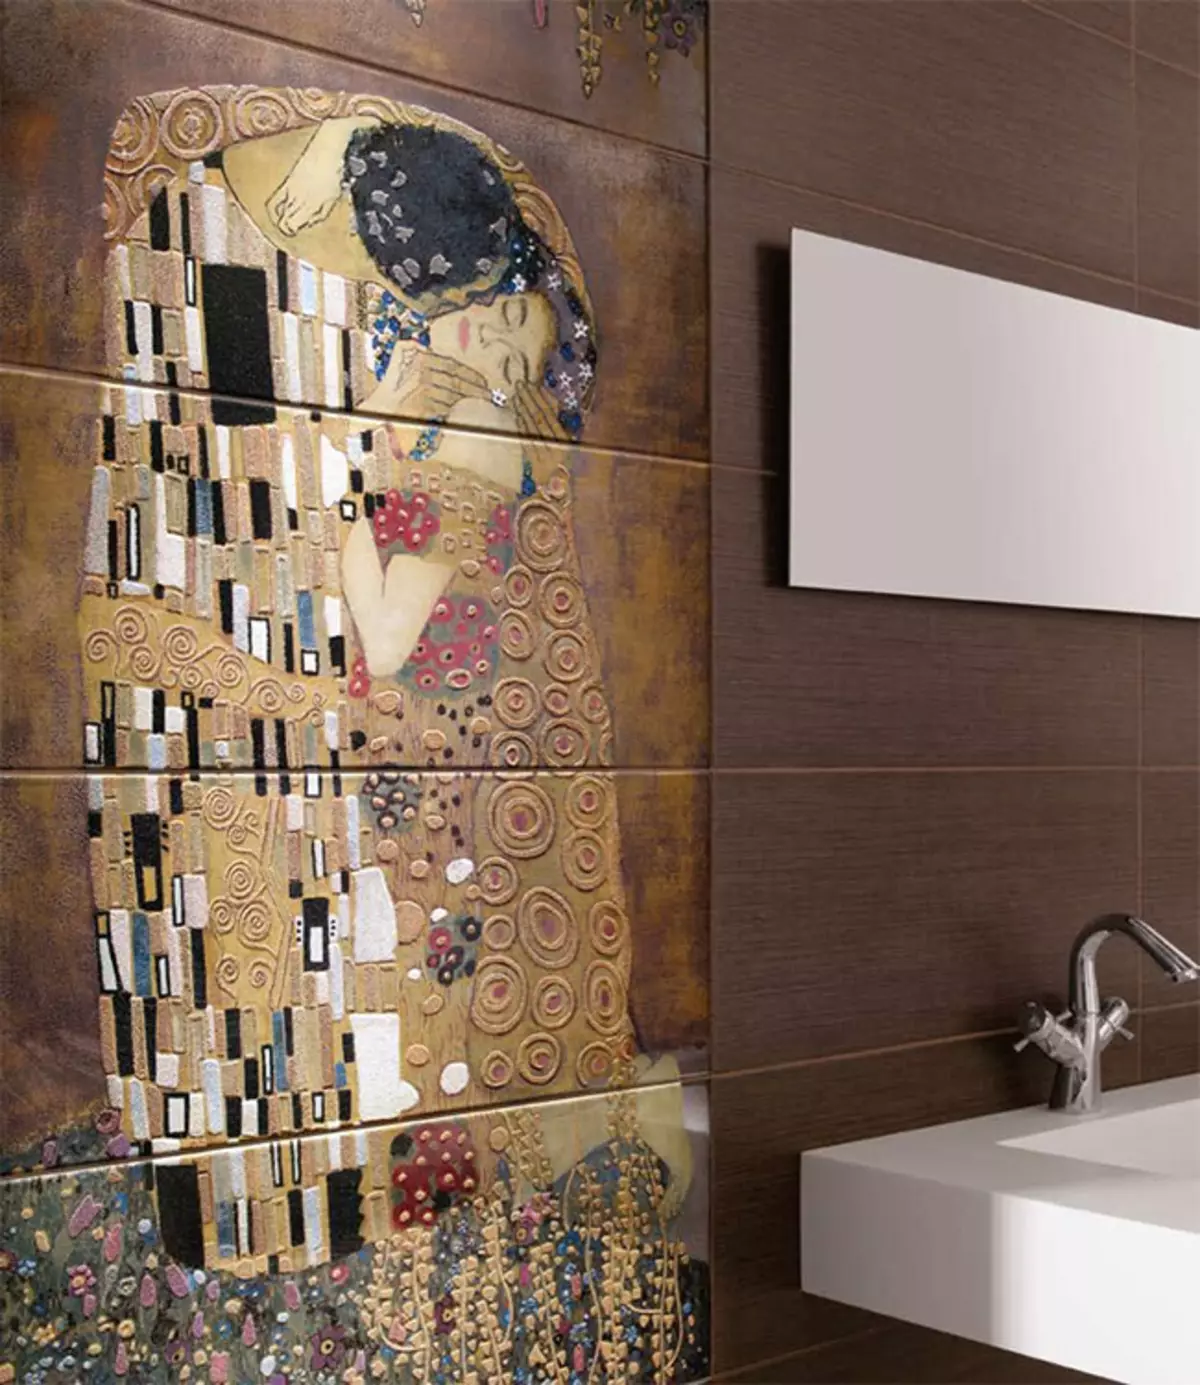 Πίνακας από κεραμίδι στο μπάνιο (79 φωτογραφίες): Επισκόπηση του πίνακα για το μπάνιο από κεραμικά πλακίδια και μωσαϊκά, πλακάκια και μωσαϊκά πάνελ με θαλάσσια θέματα και άλλα 21368_25